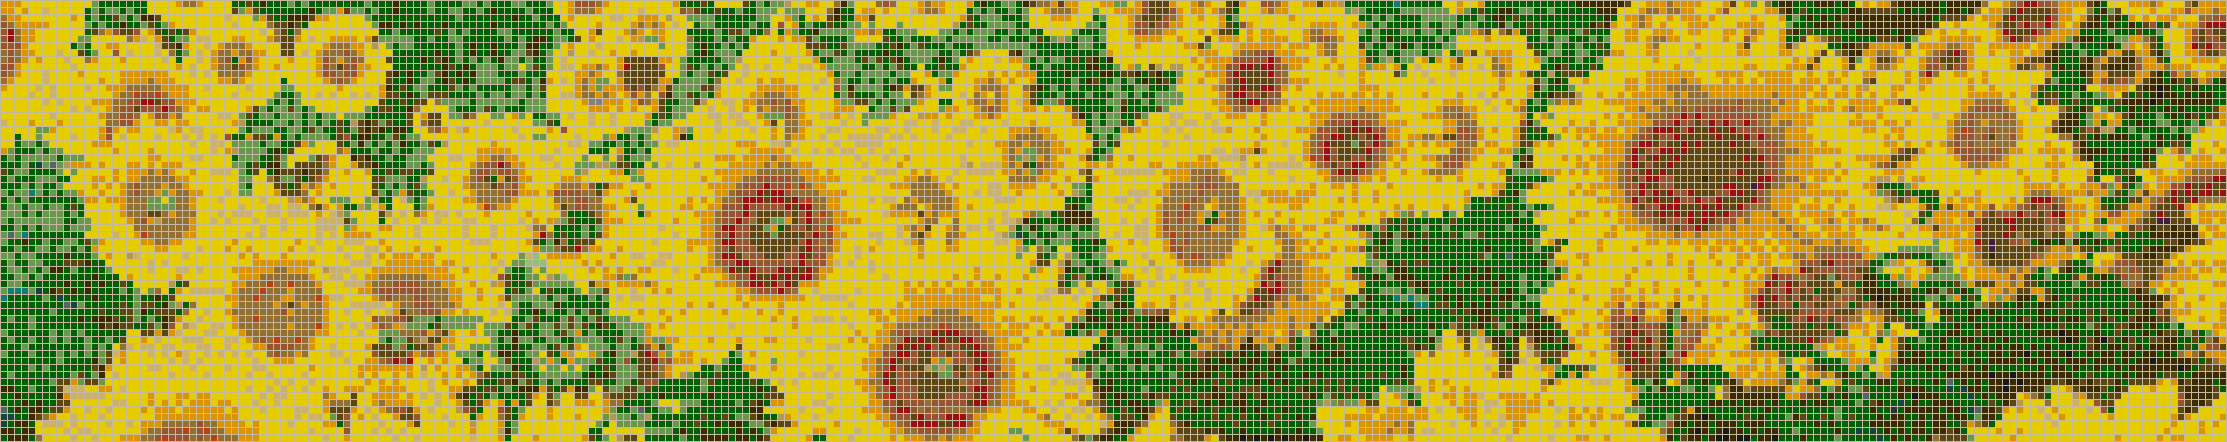 Sunflower Splashback - Mosaic Tile Art